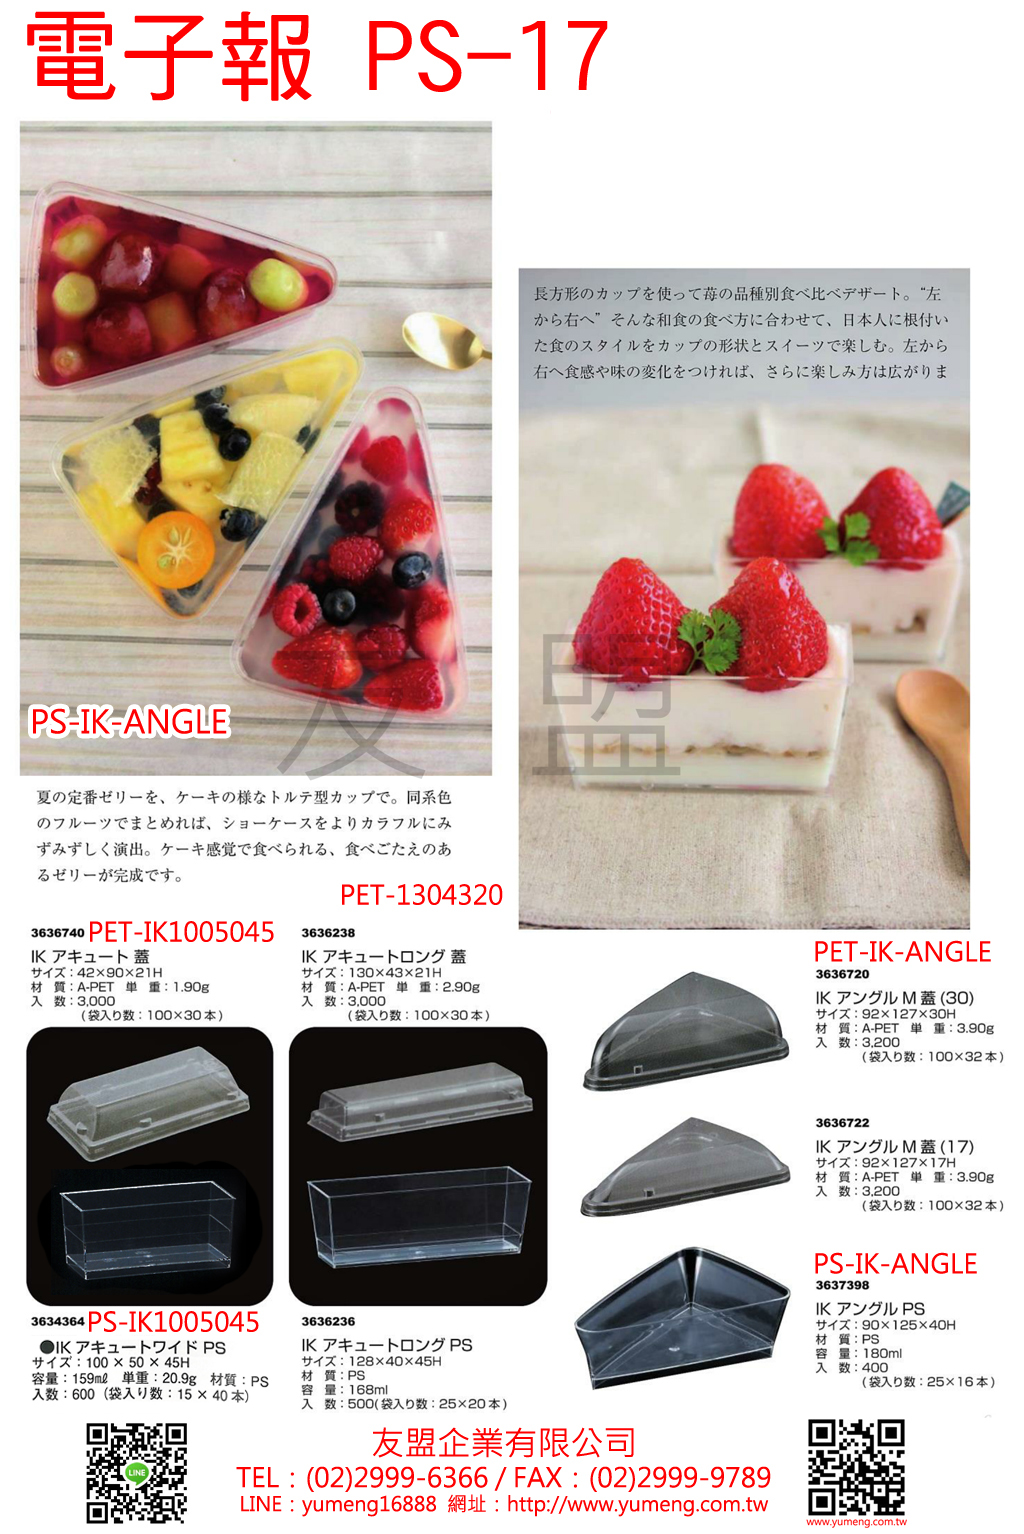 日本烘焙包裝材料-三角慕斯果凍杯PS-17